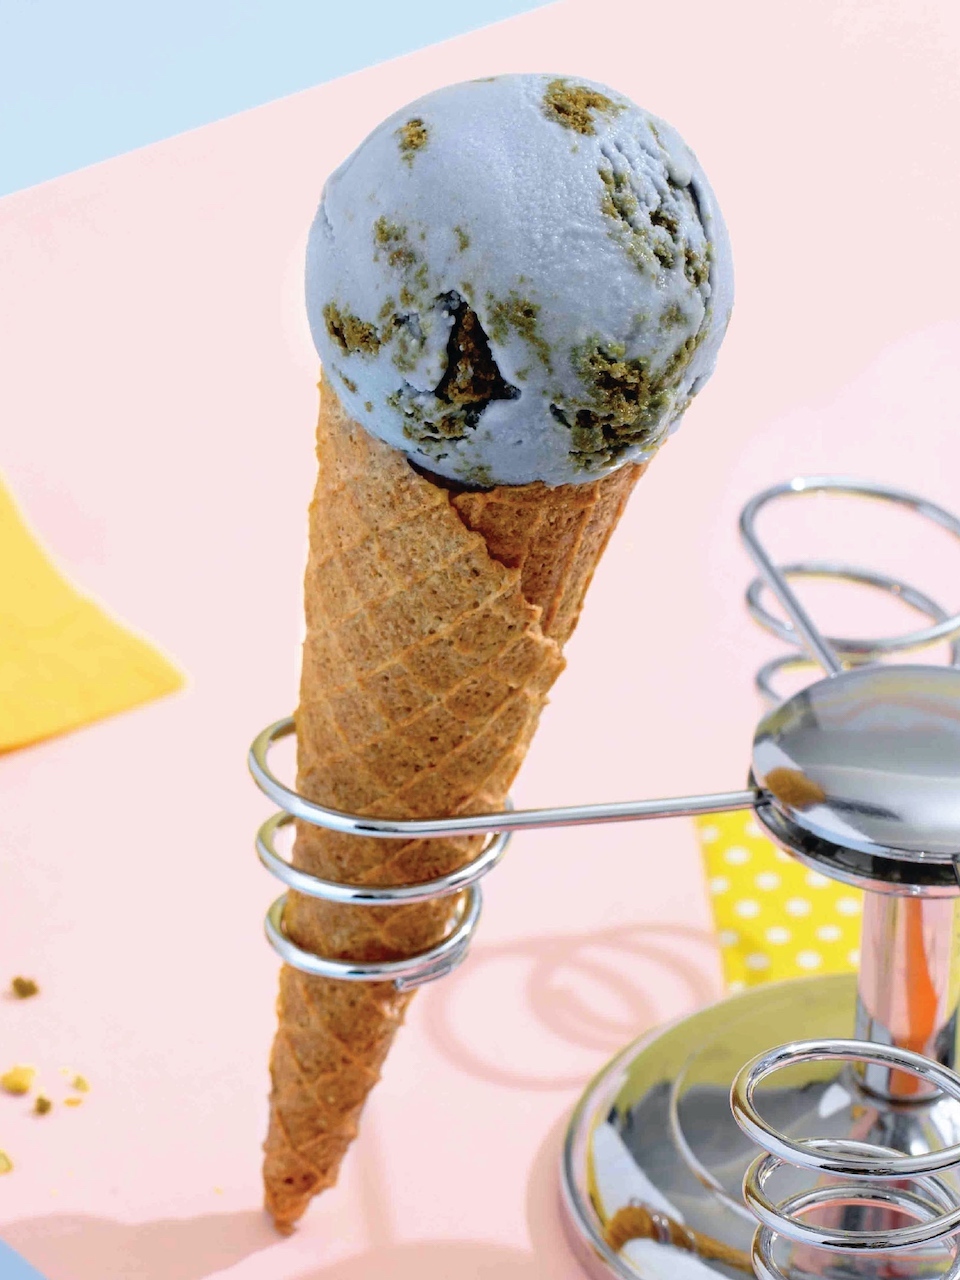  kind kones vegan ice cream in singapore